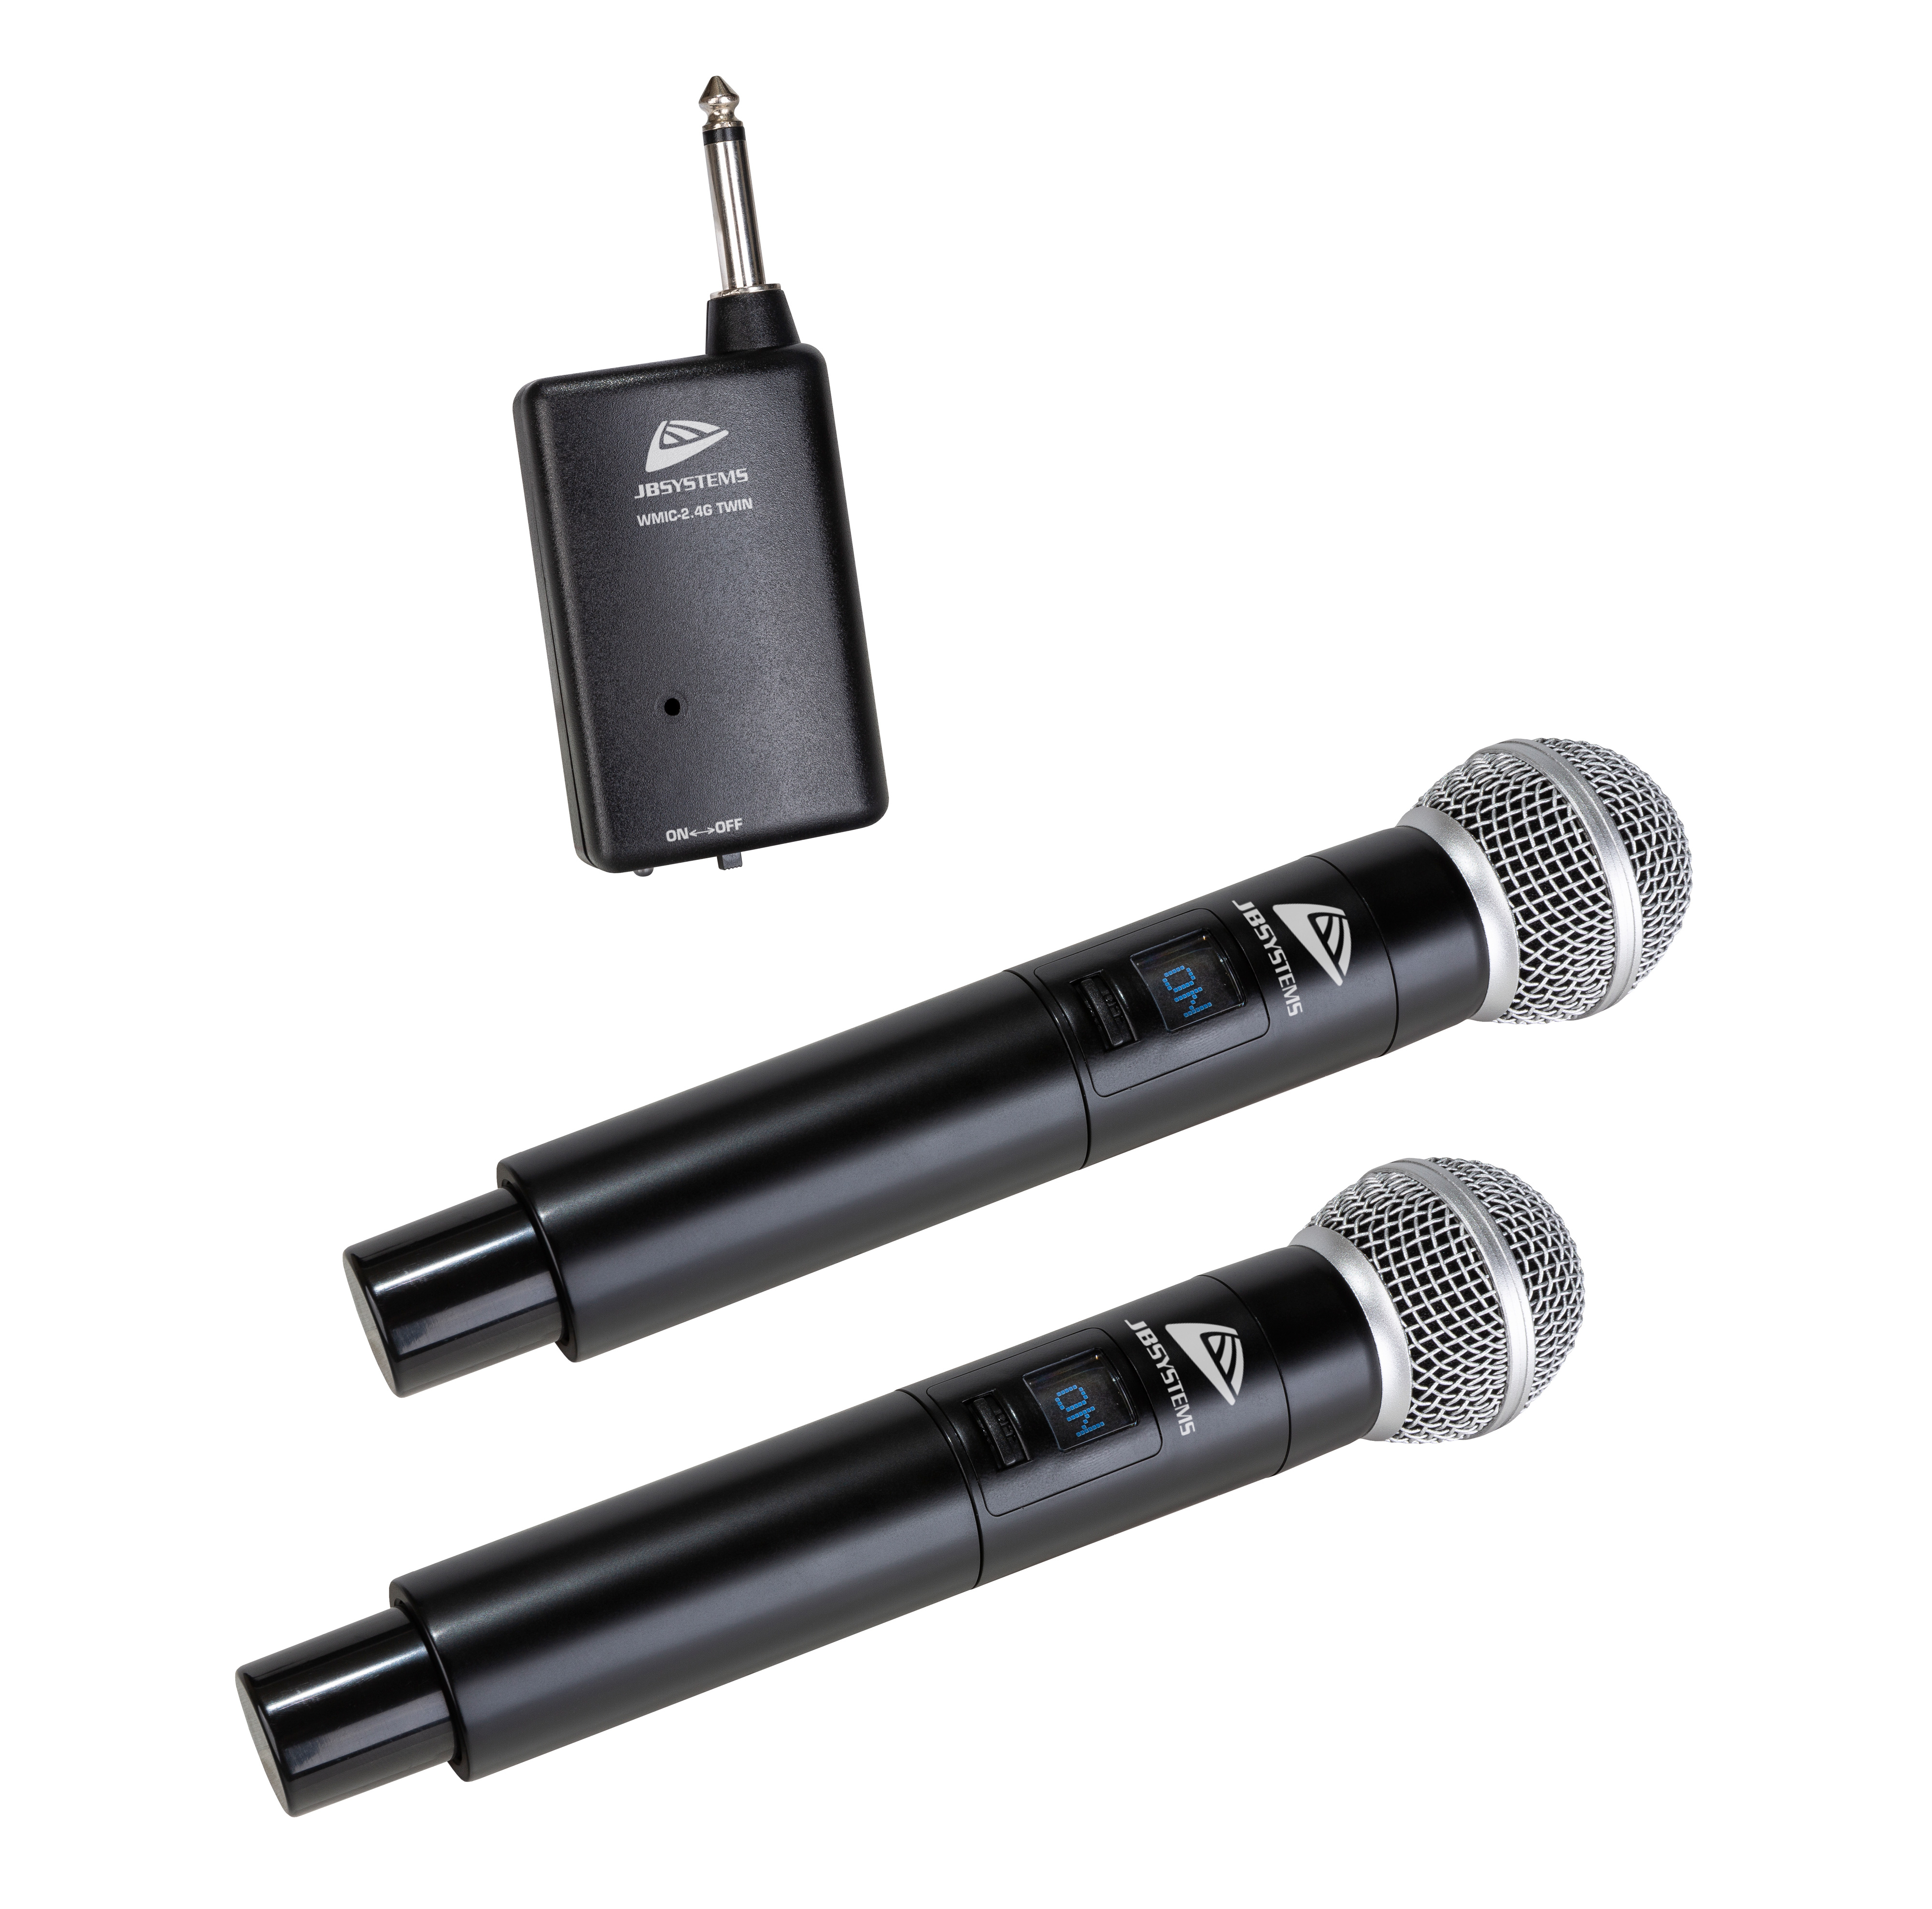 Système de microphone à main sans fil 2,4GHz facile à brancher et à utiliser : 2 microphones et 1 récepteur